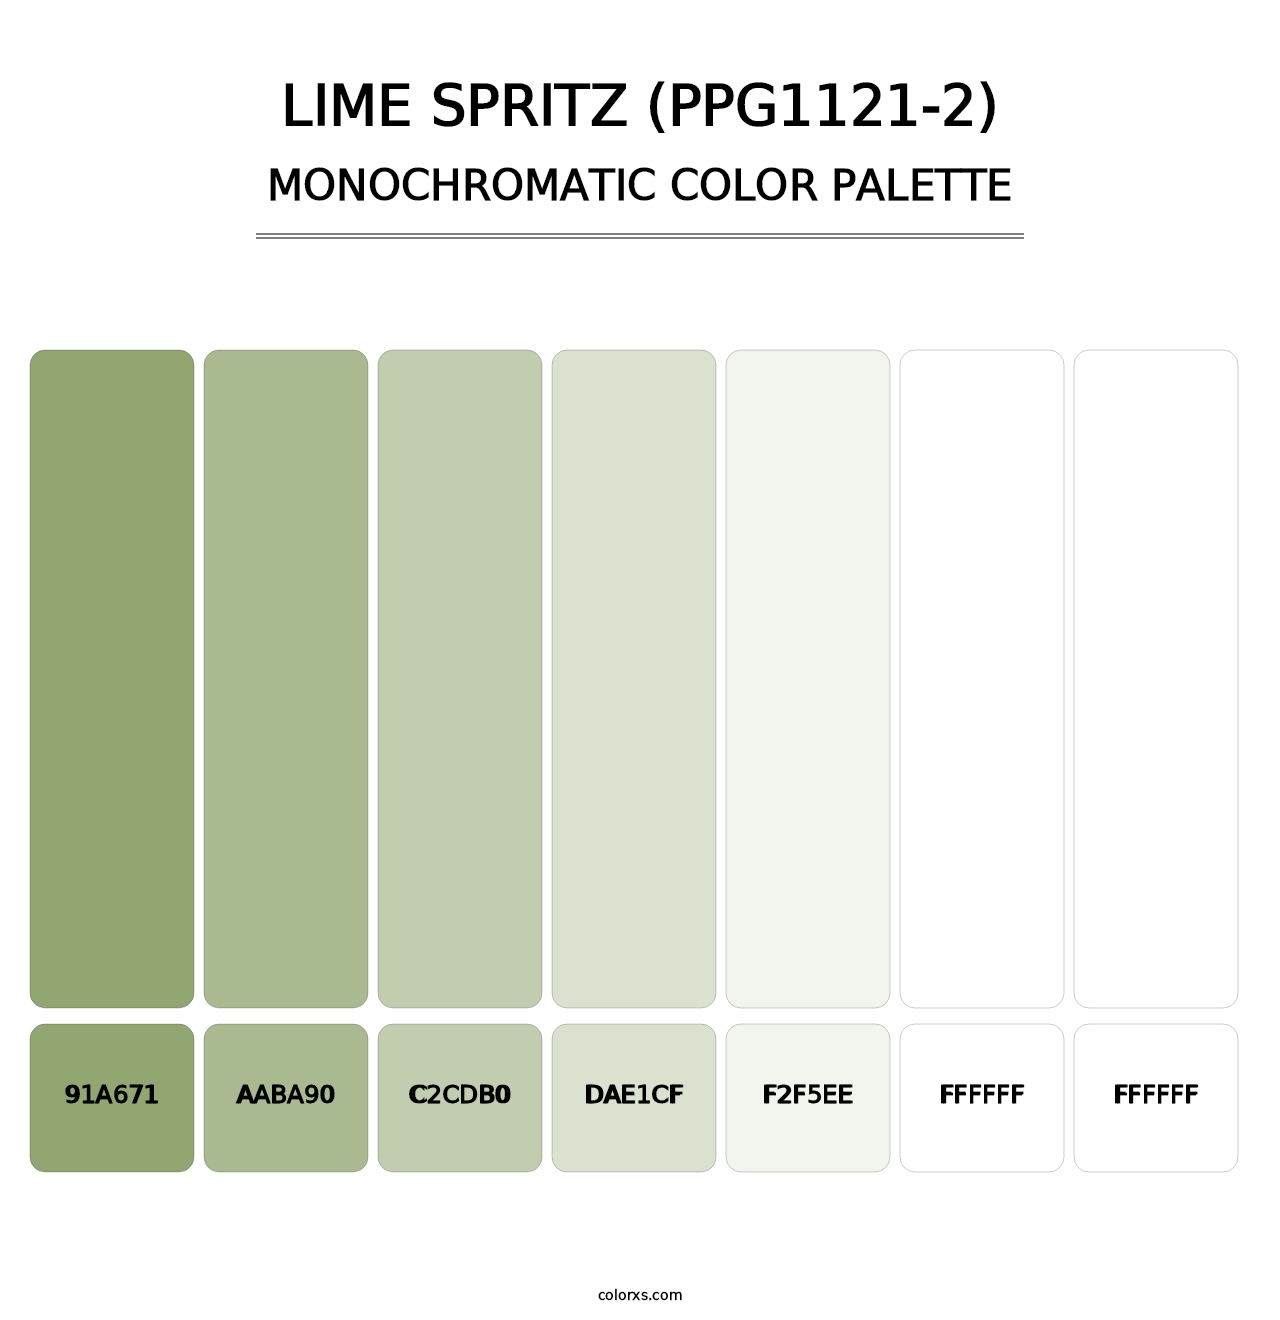 Lime Spritz (PPG1121-2) - Monochromatic Color Palette